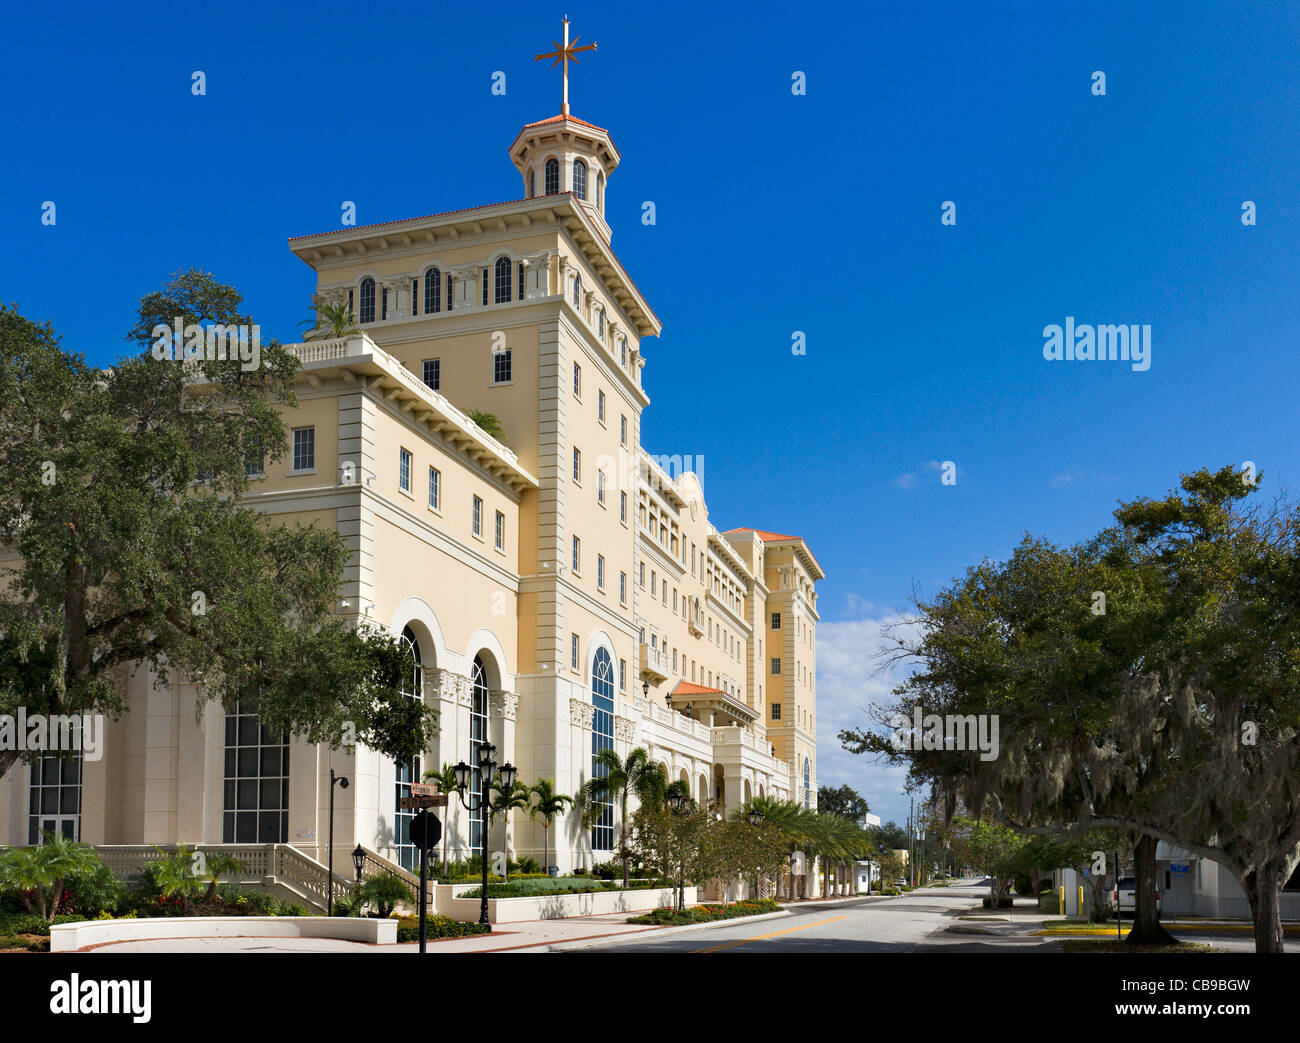 Die neue "Super Power Building" in der Innenstadt von Clearwater, spirituelle Hauptquartier und Mekka der Scientology-Kirche, Florida, USA Stockfoto